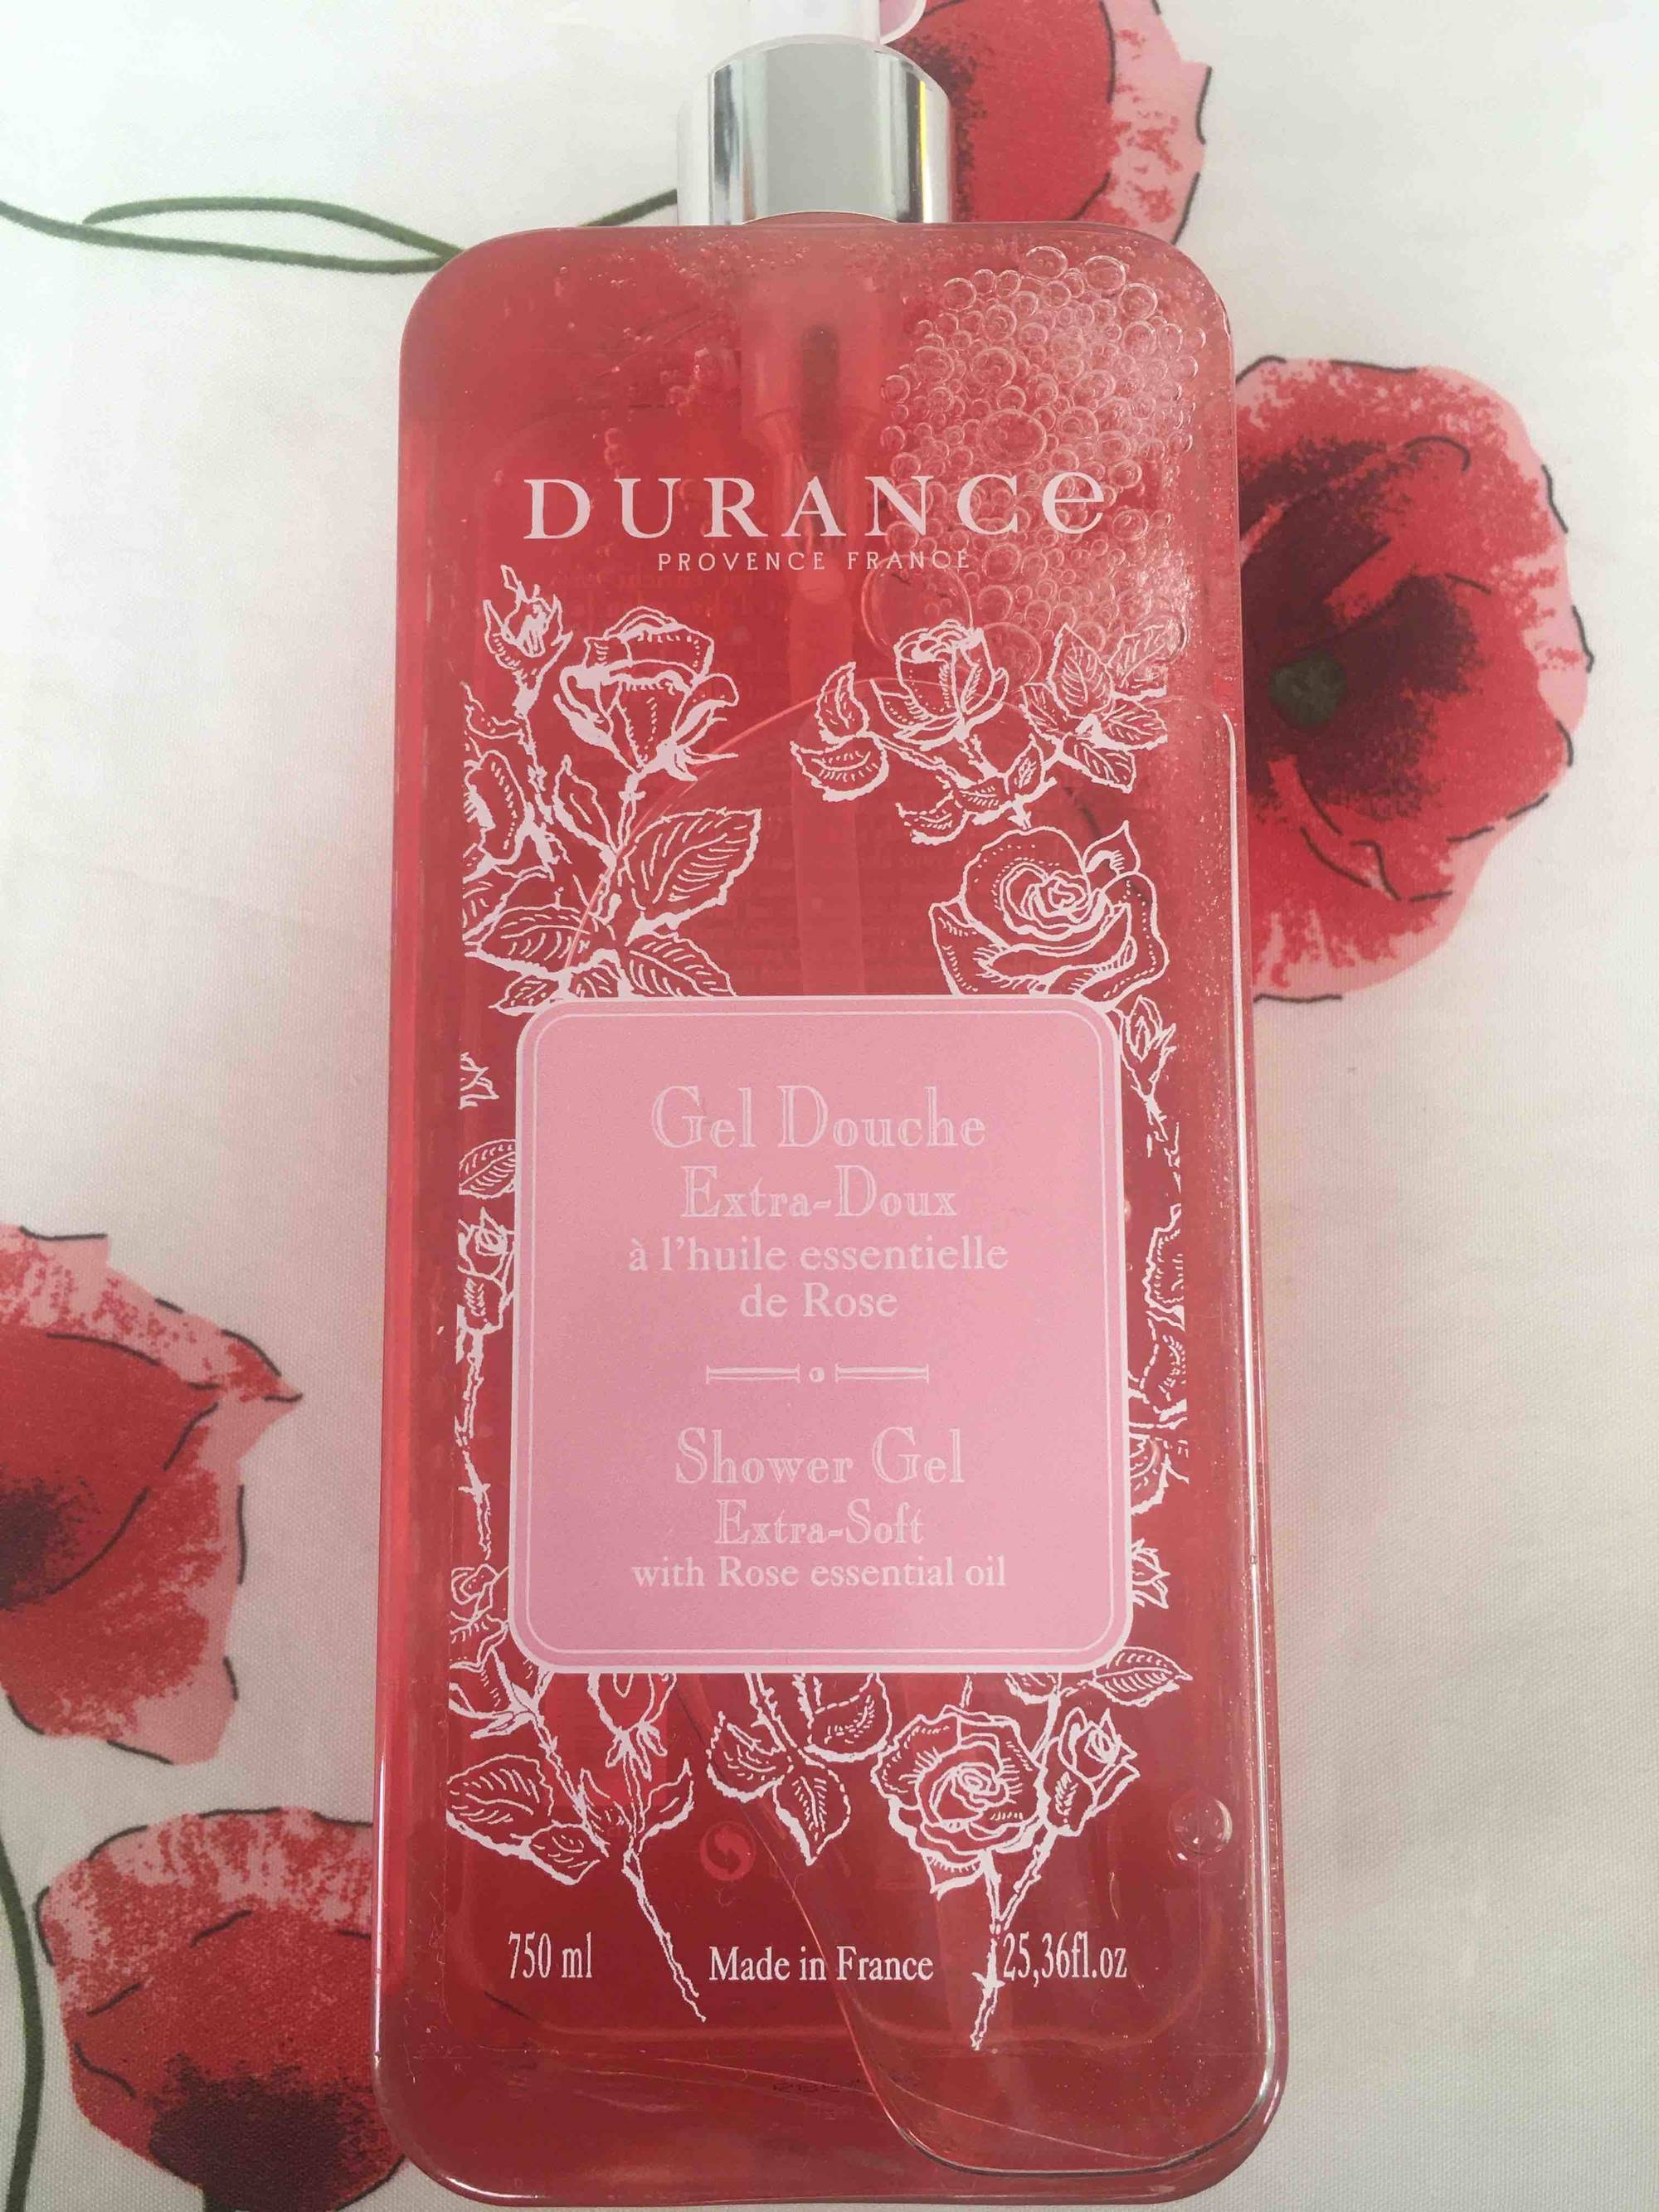 DURANCE - Gel douche extra doux à l'huile essentielle de rose